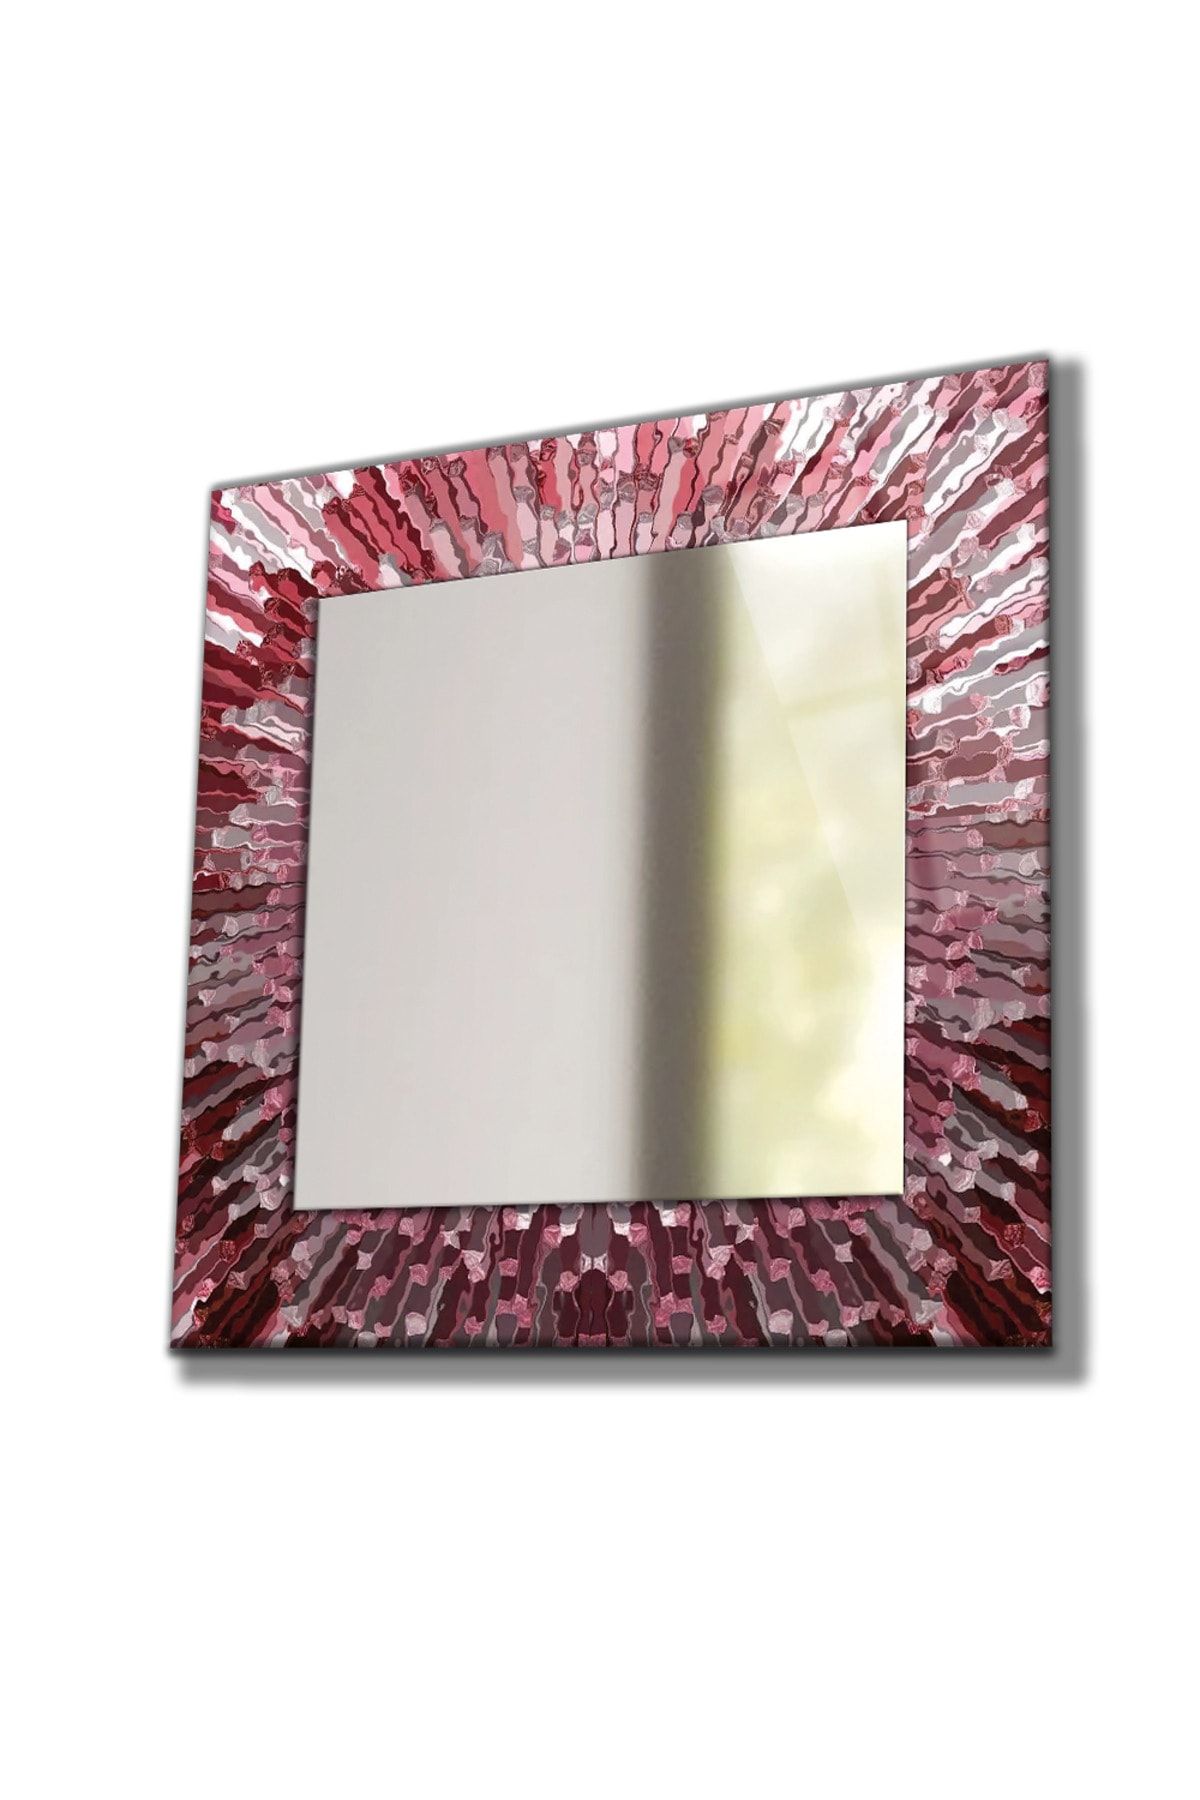 Genel Markalar Desenli Duvar Aynası, Temperli Cam Kenarlı Dekoratif Ayna, Mutfak Banyo Wc Tuvalet Salon Antre Hol